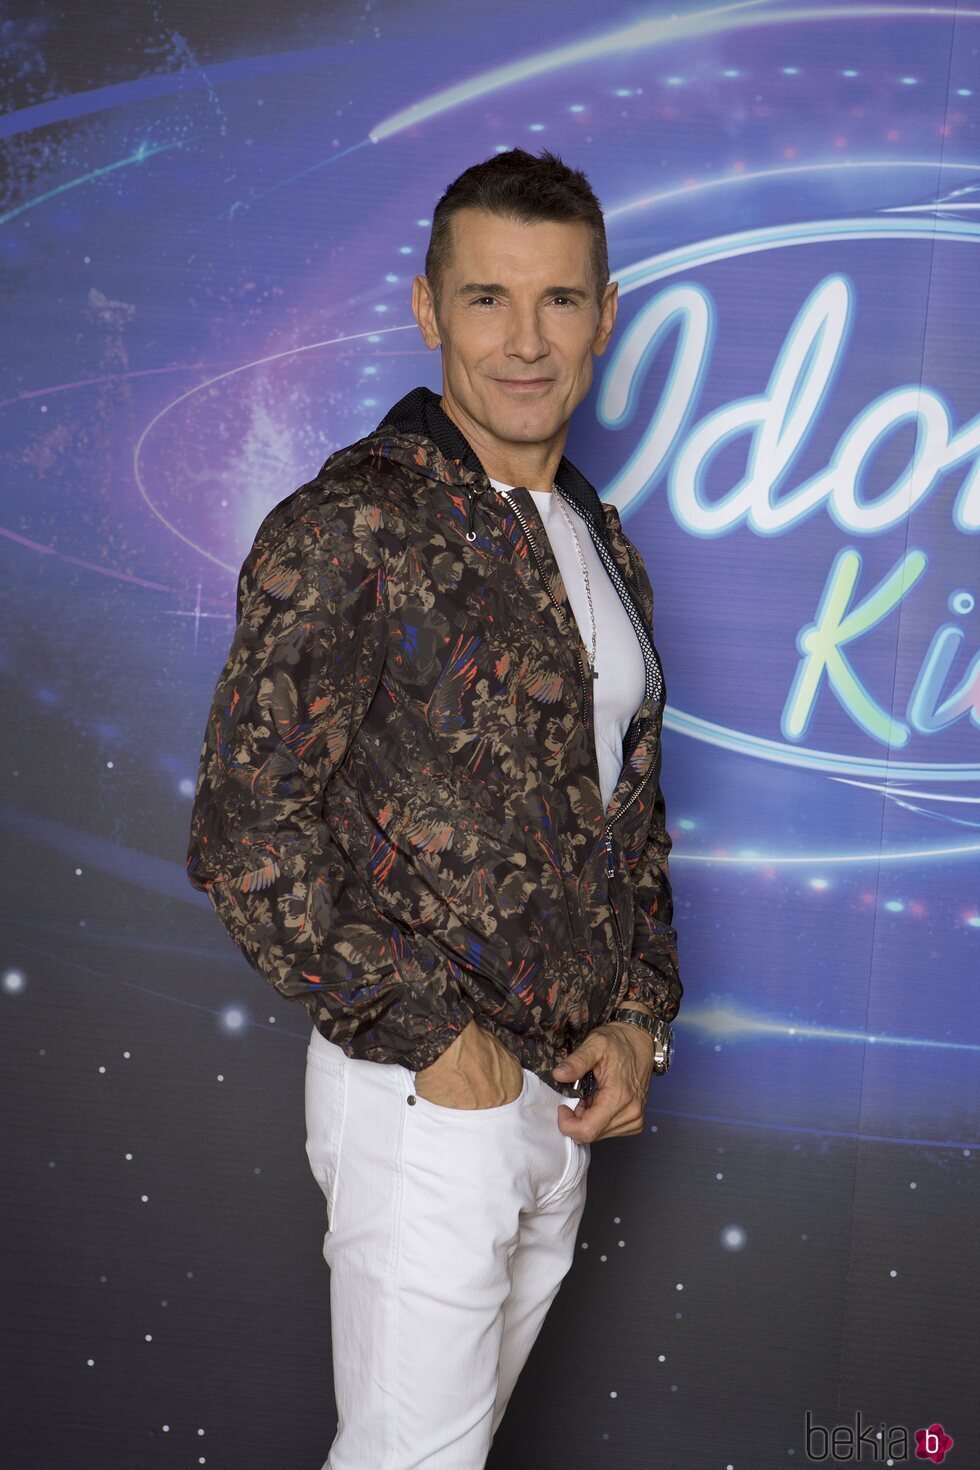 Jesús Vázquez posando como presentador de 'Idol Kids 2'